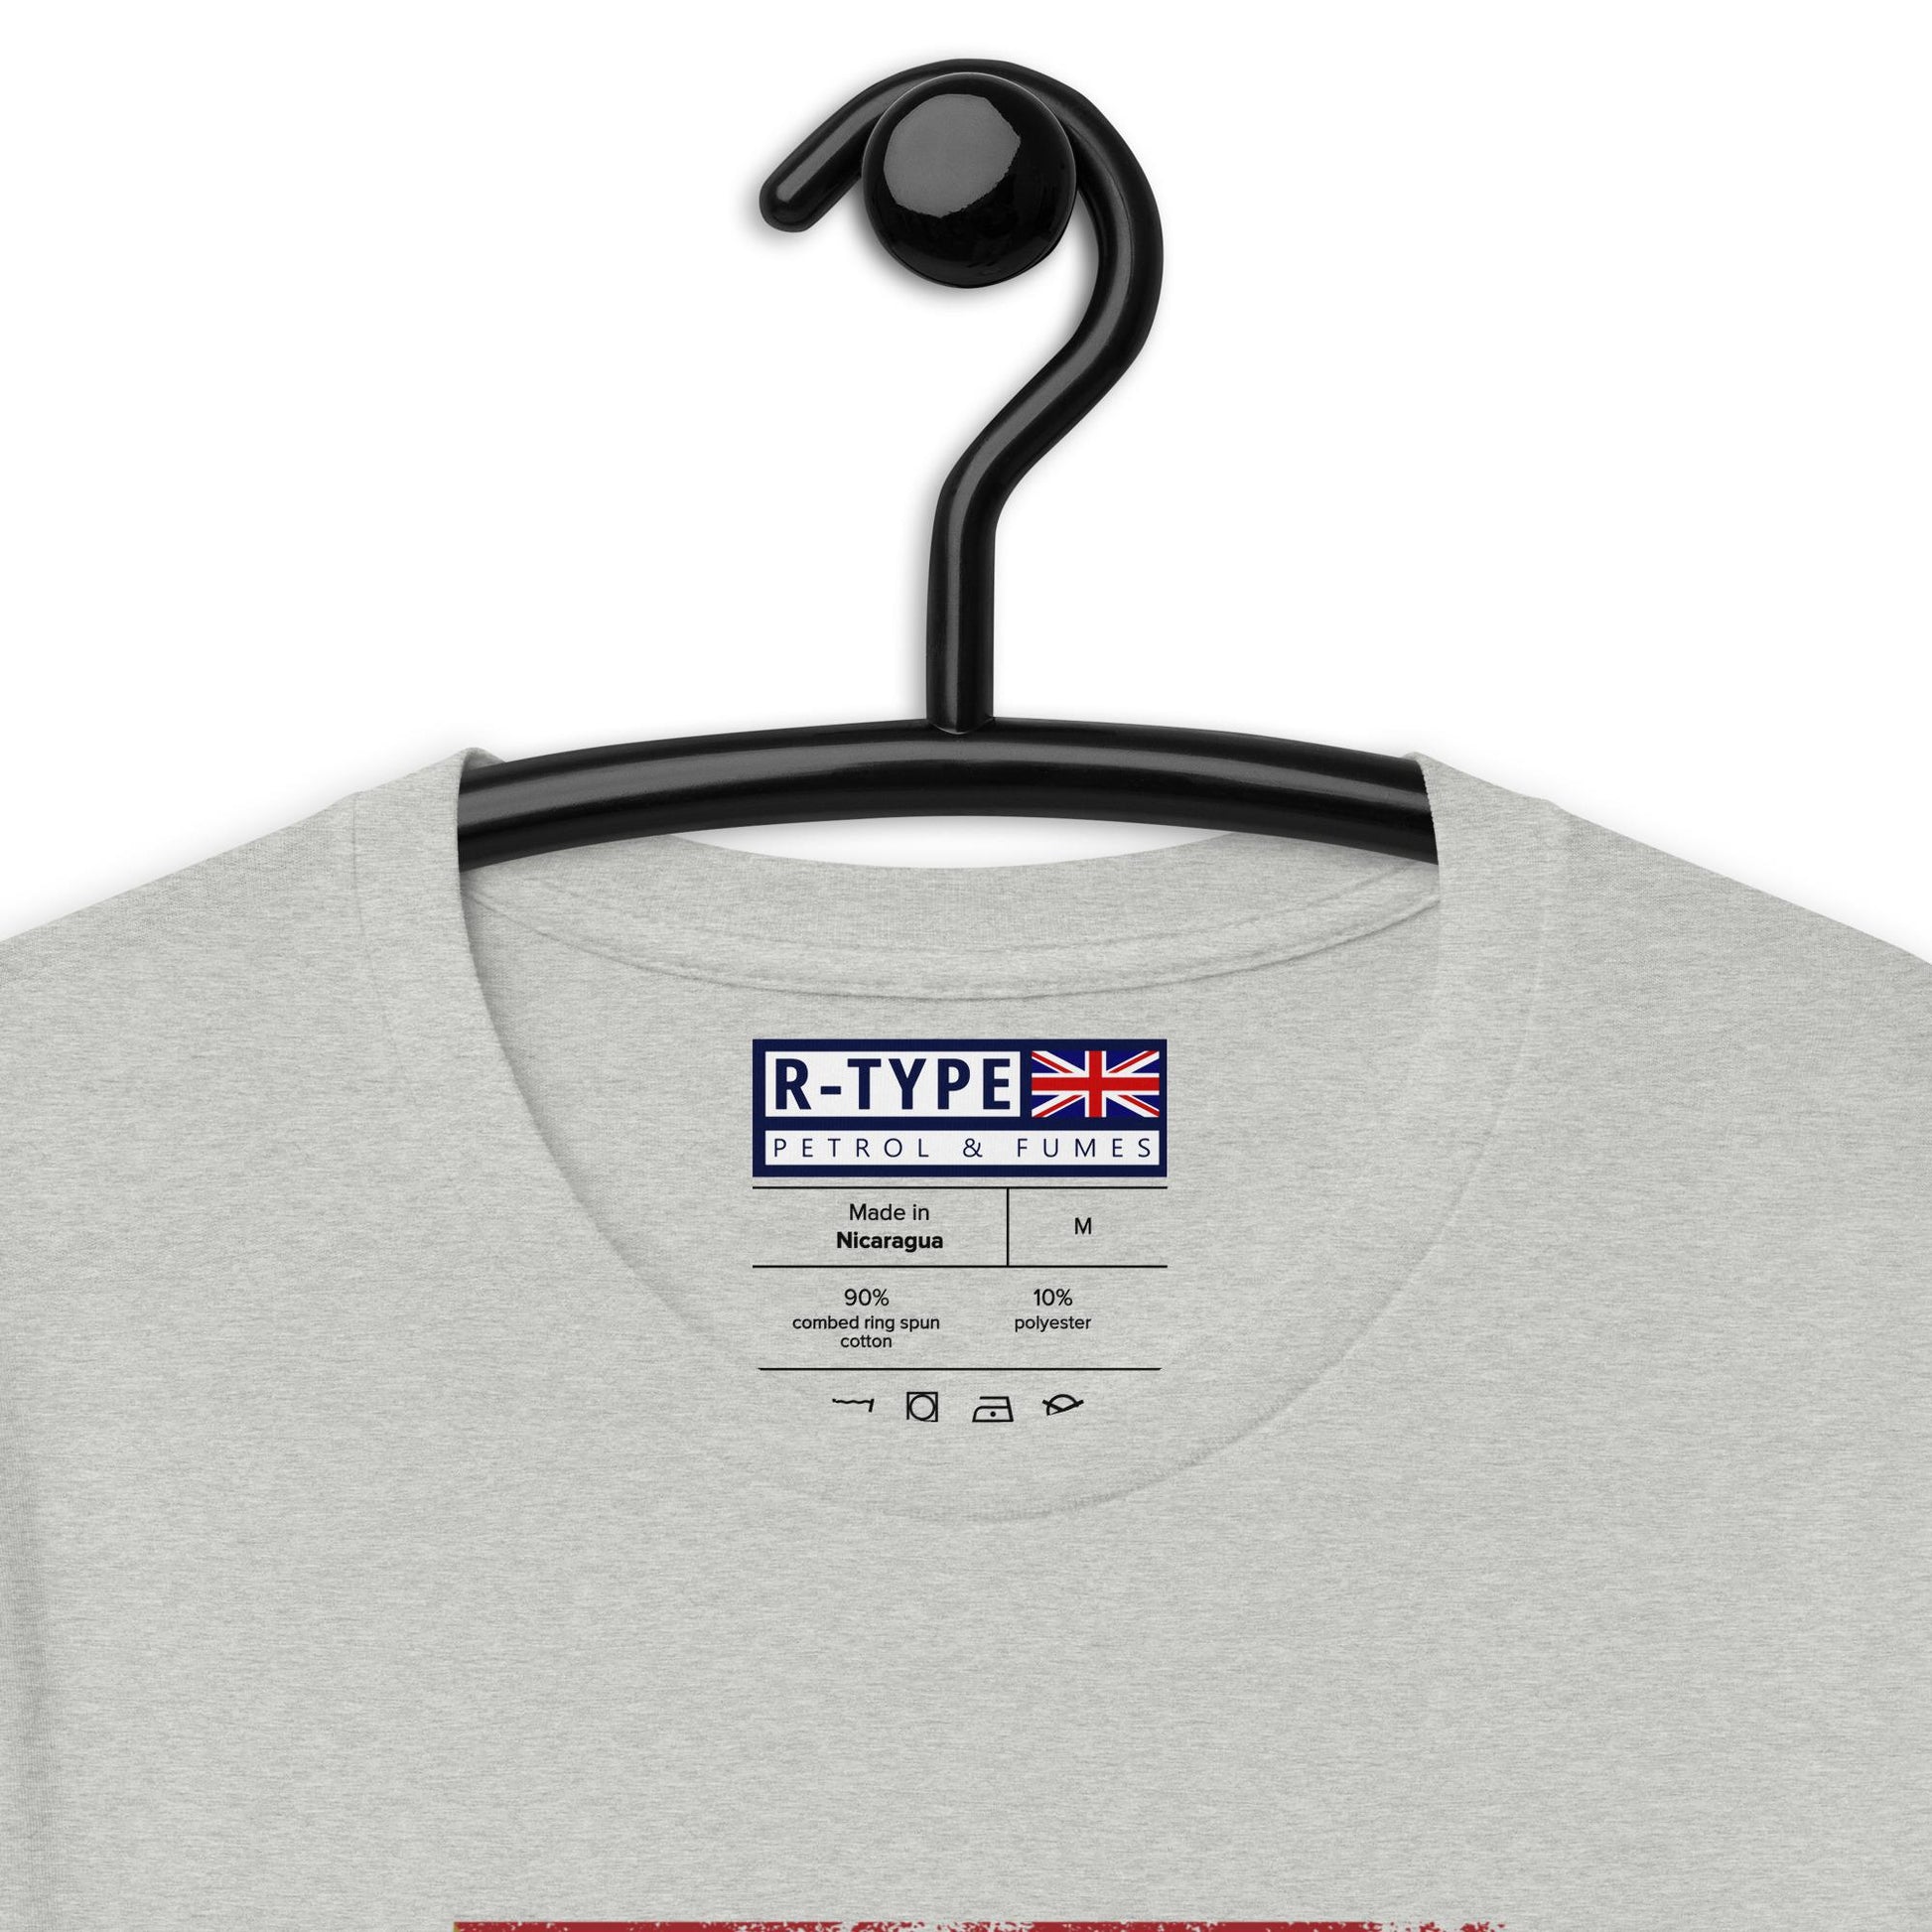 Classic Targa Florio Sportscar Apparel – T-shirt Poster R-Type Racing